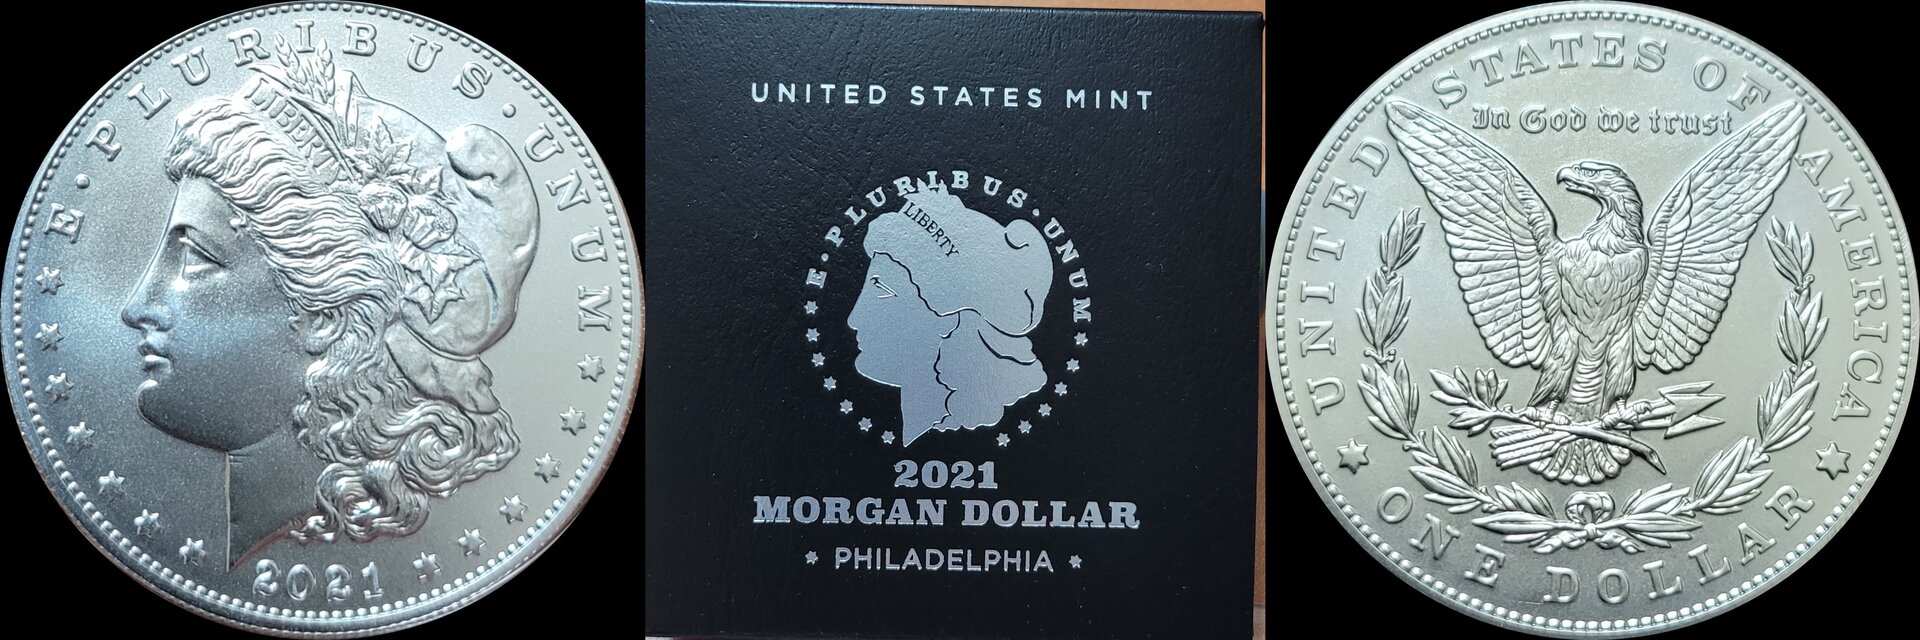 2021 Morgan Dollar 4.jpg